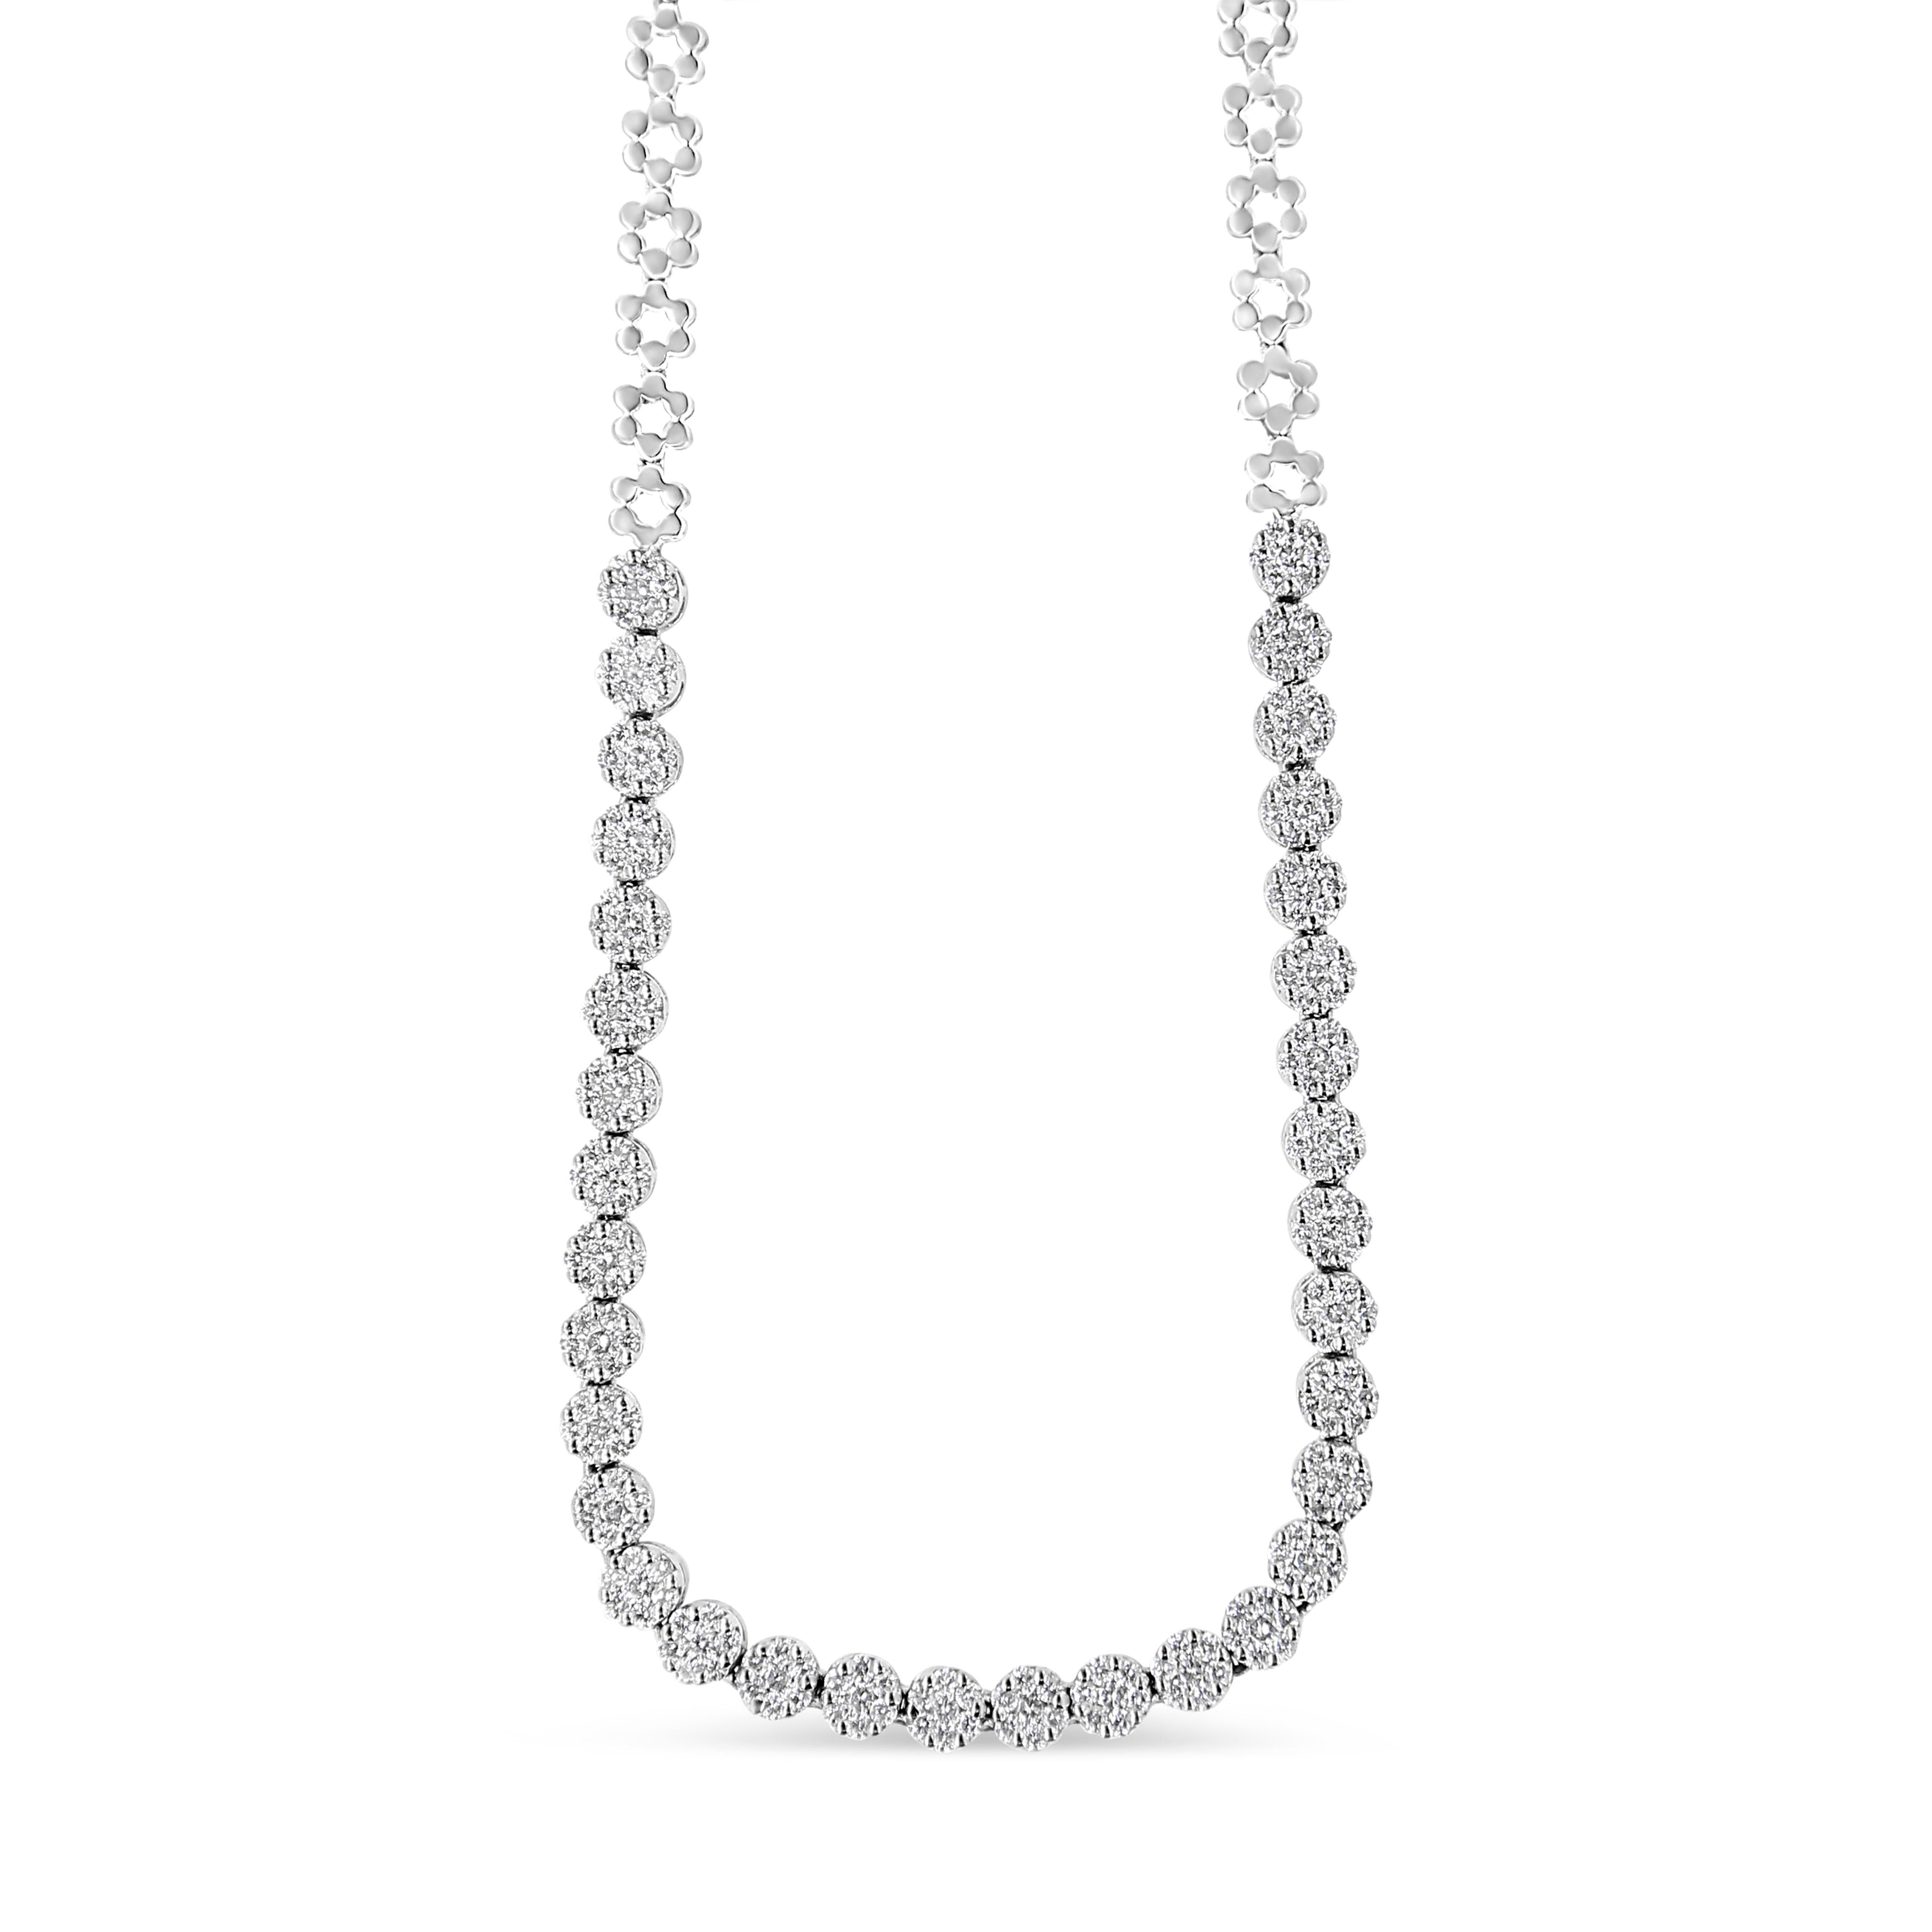 Aussi élégant que spectaculaire, cet éblouissant collier de diamants Riviera rehausse toutes les tenues. Réalisé par des experts en or blanc 14 carats, ce modèle accrocheur présente des grappes de diamants ronds étincelants en forme de fleur,